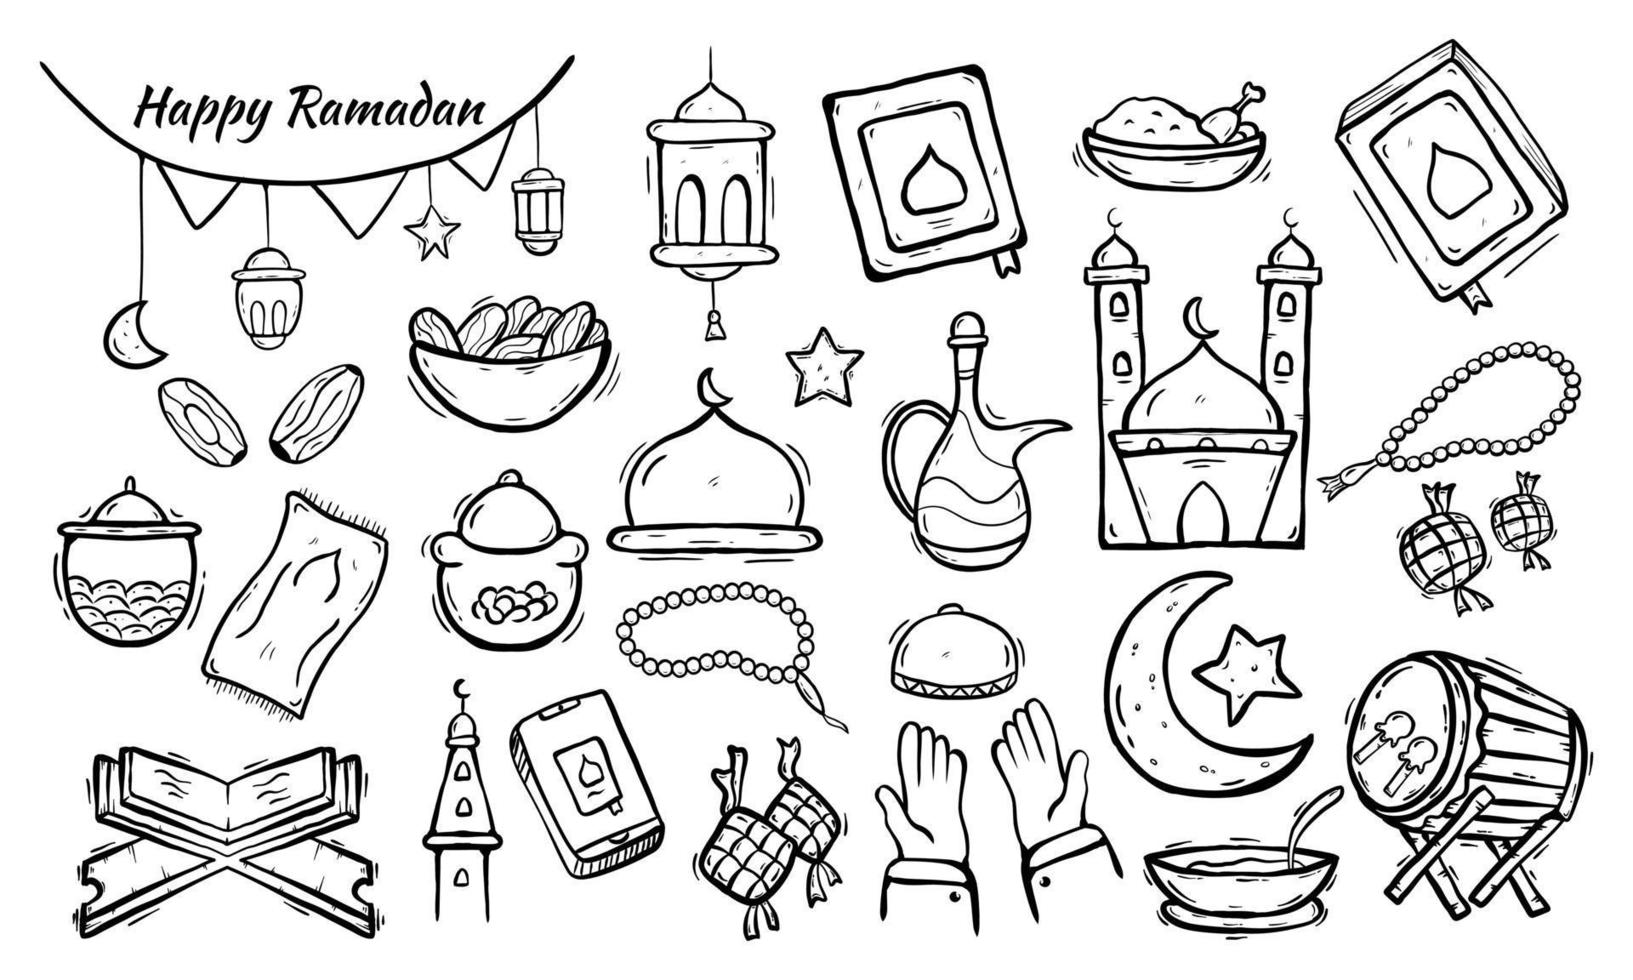 set van islamitisch doodle-element gerelateerd aan hulst ramadan. ontwerpconcept islamitische symbolen en pictogrammen met handgetekende schetsstijl vector